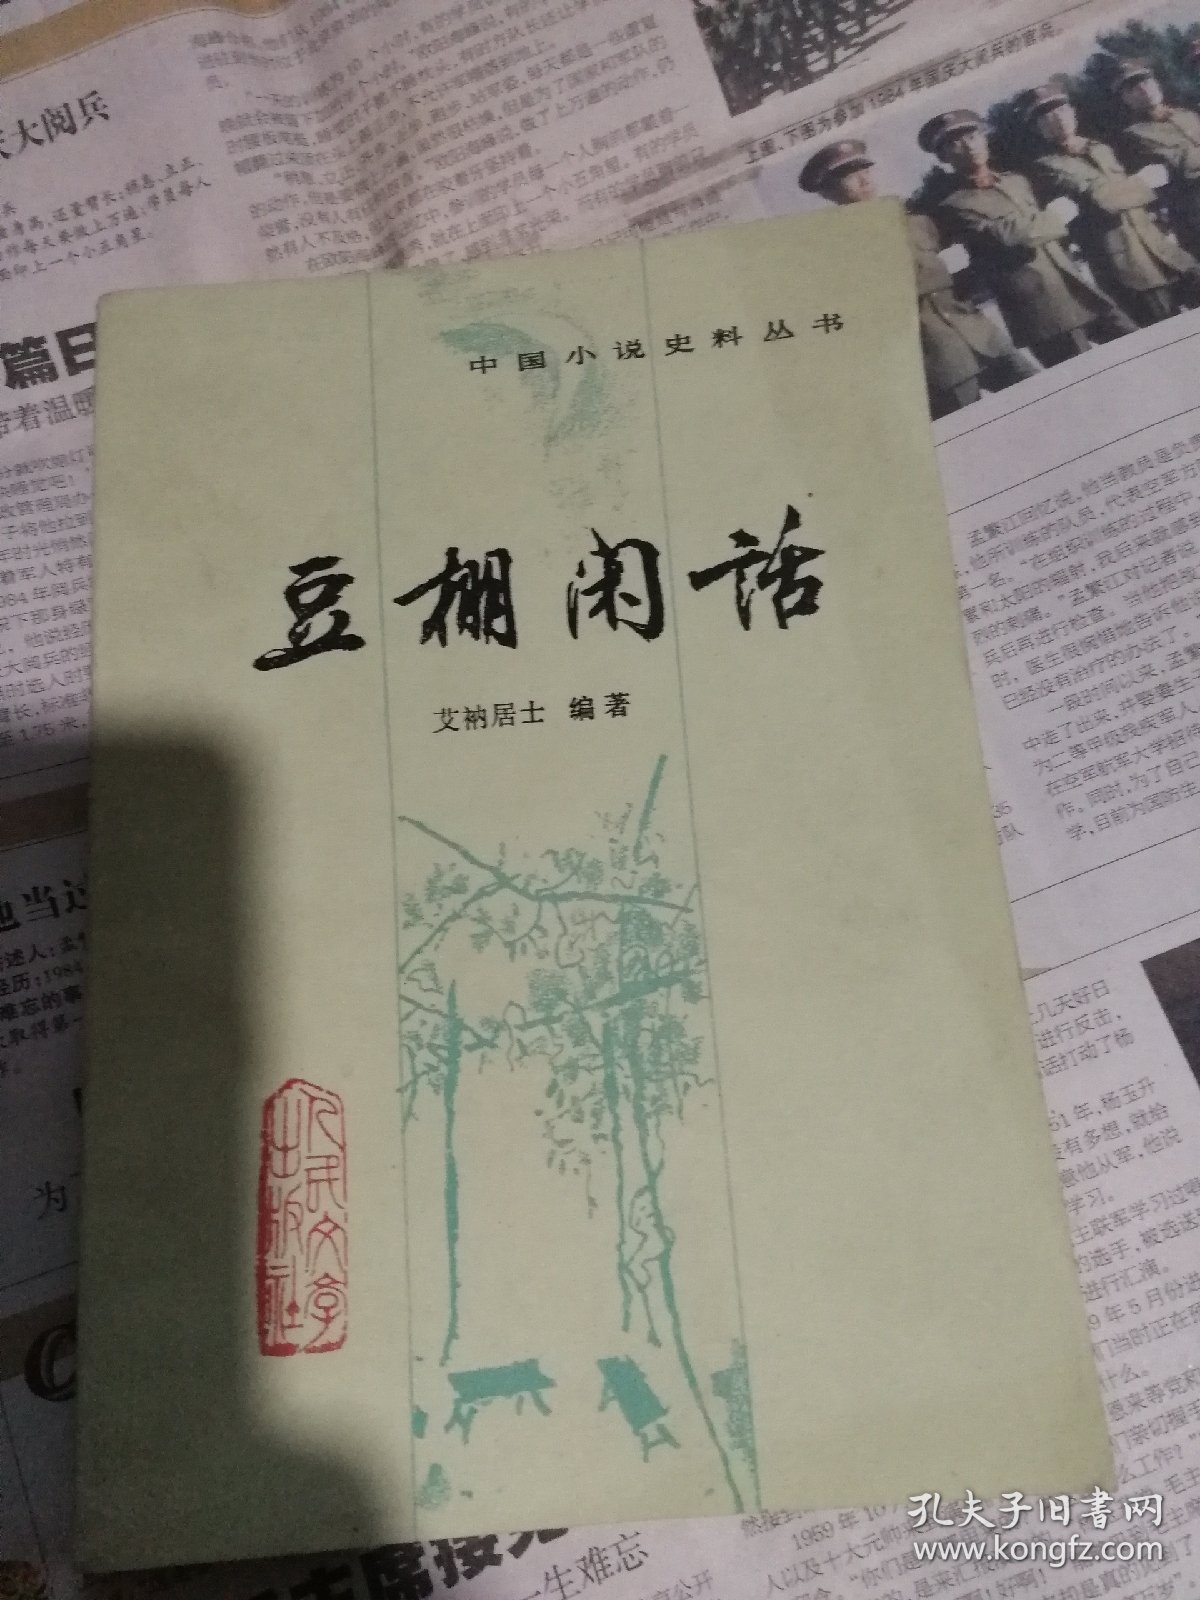 豆棚闲话一一中国小说史料丛书